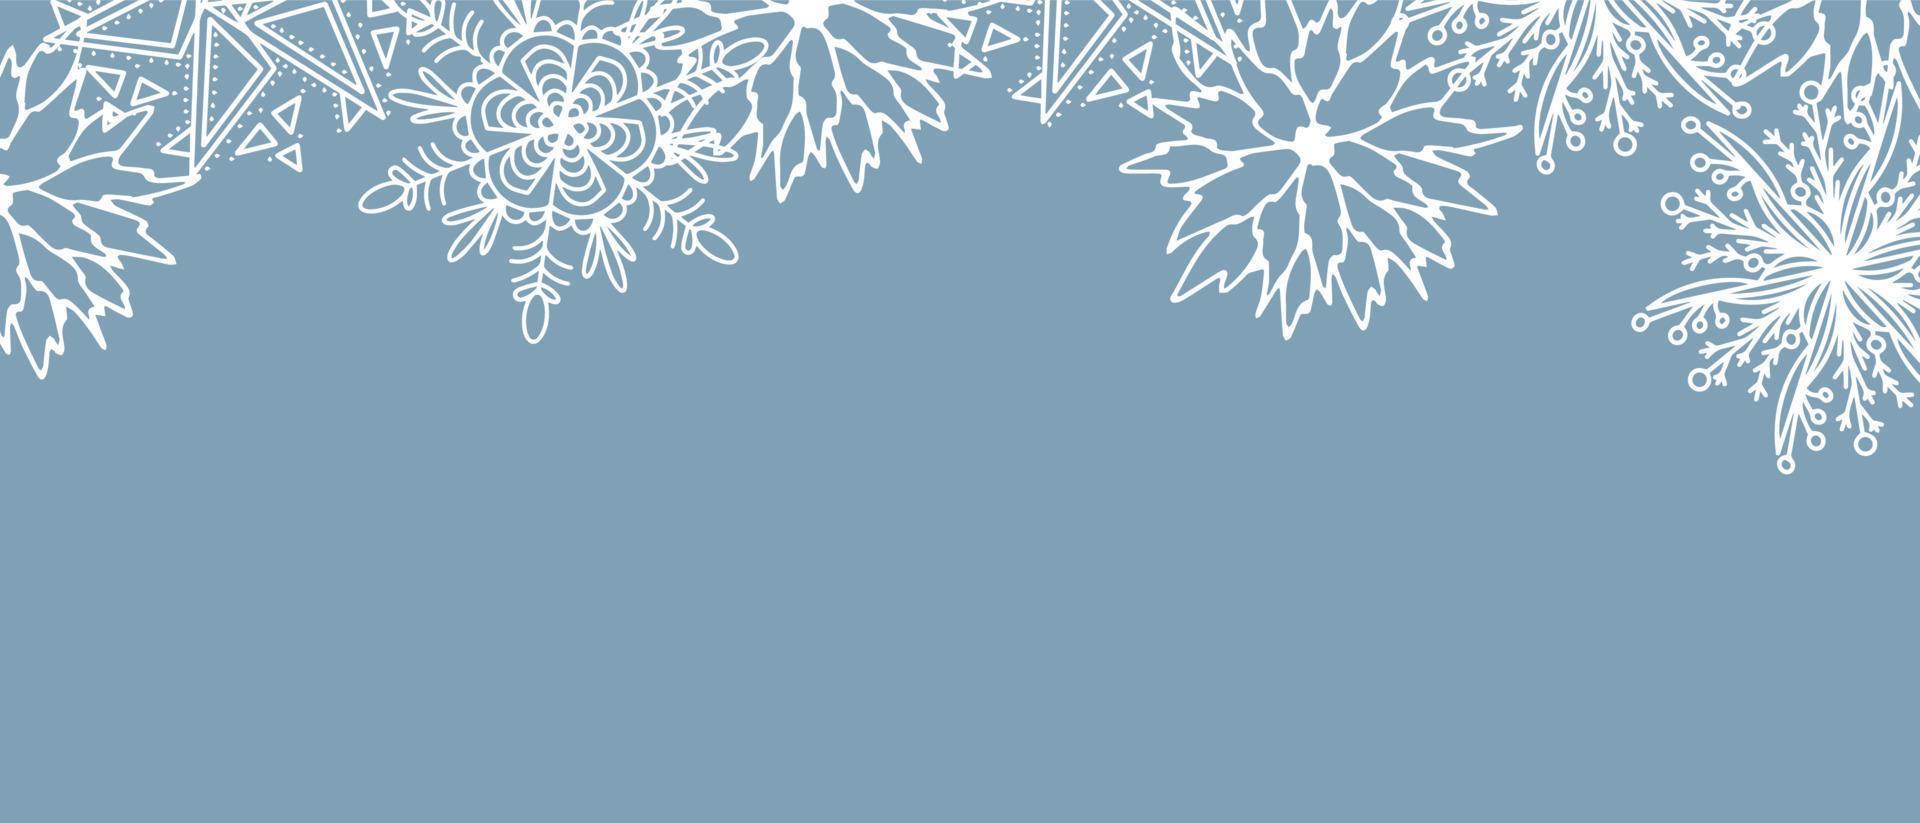 belo conjunto de árvore de natal de elementos botânicos brancos, bagas para design de inverno. coleção de elementos de ano novo de natal. silhuetas congeladas de galhos de cristal sobre um fundo azul. vetor